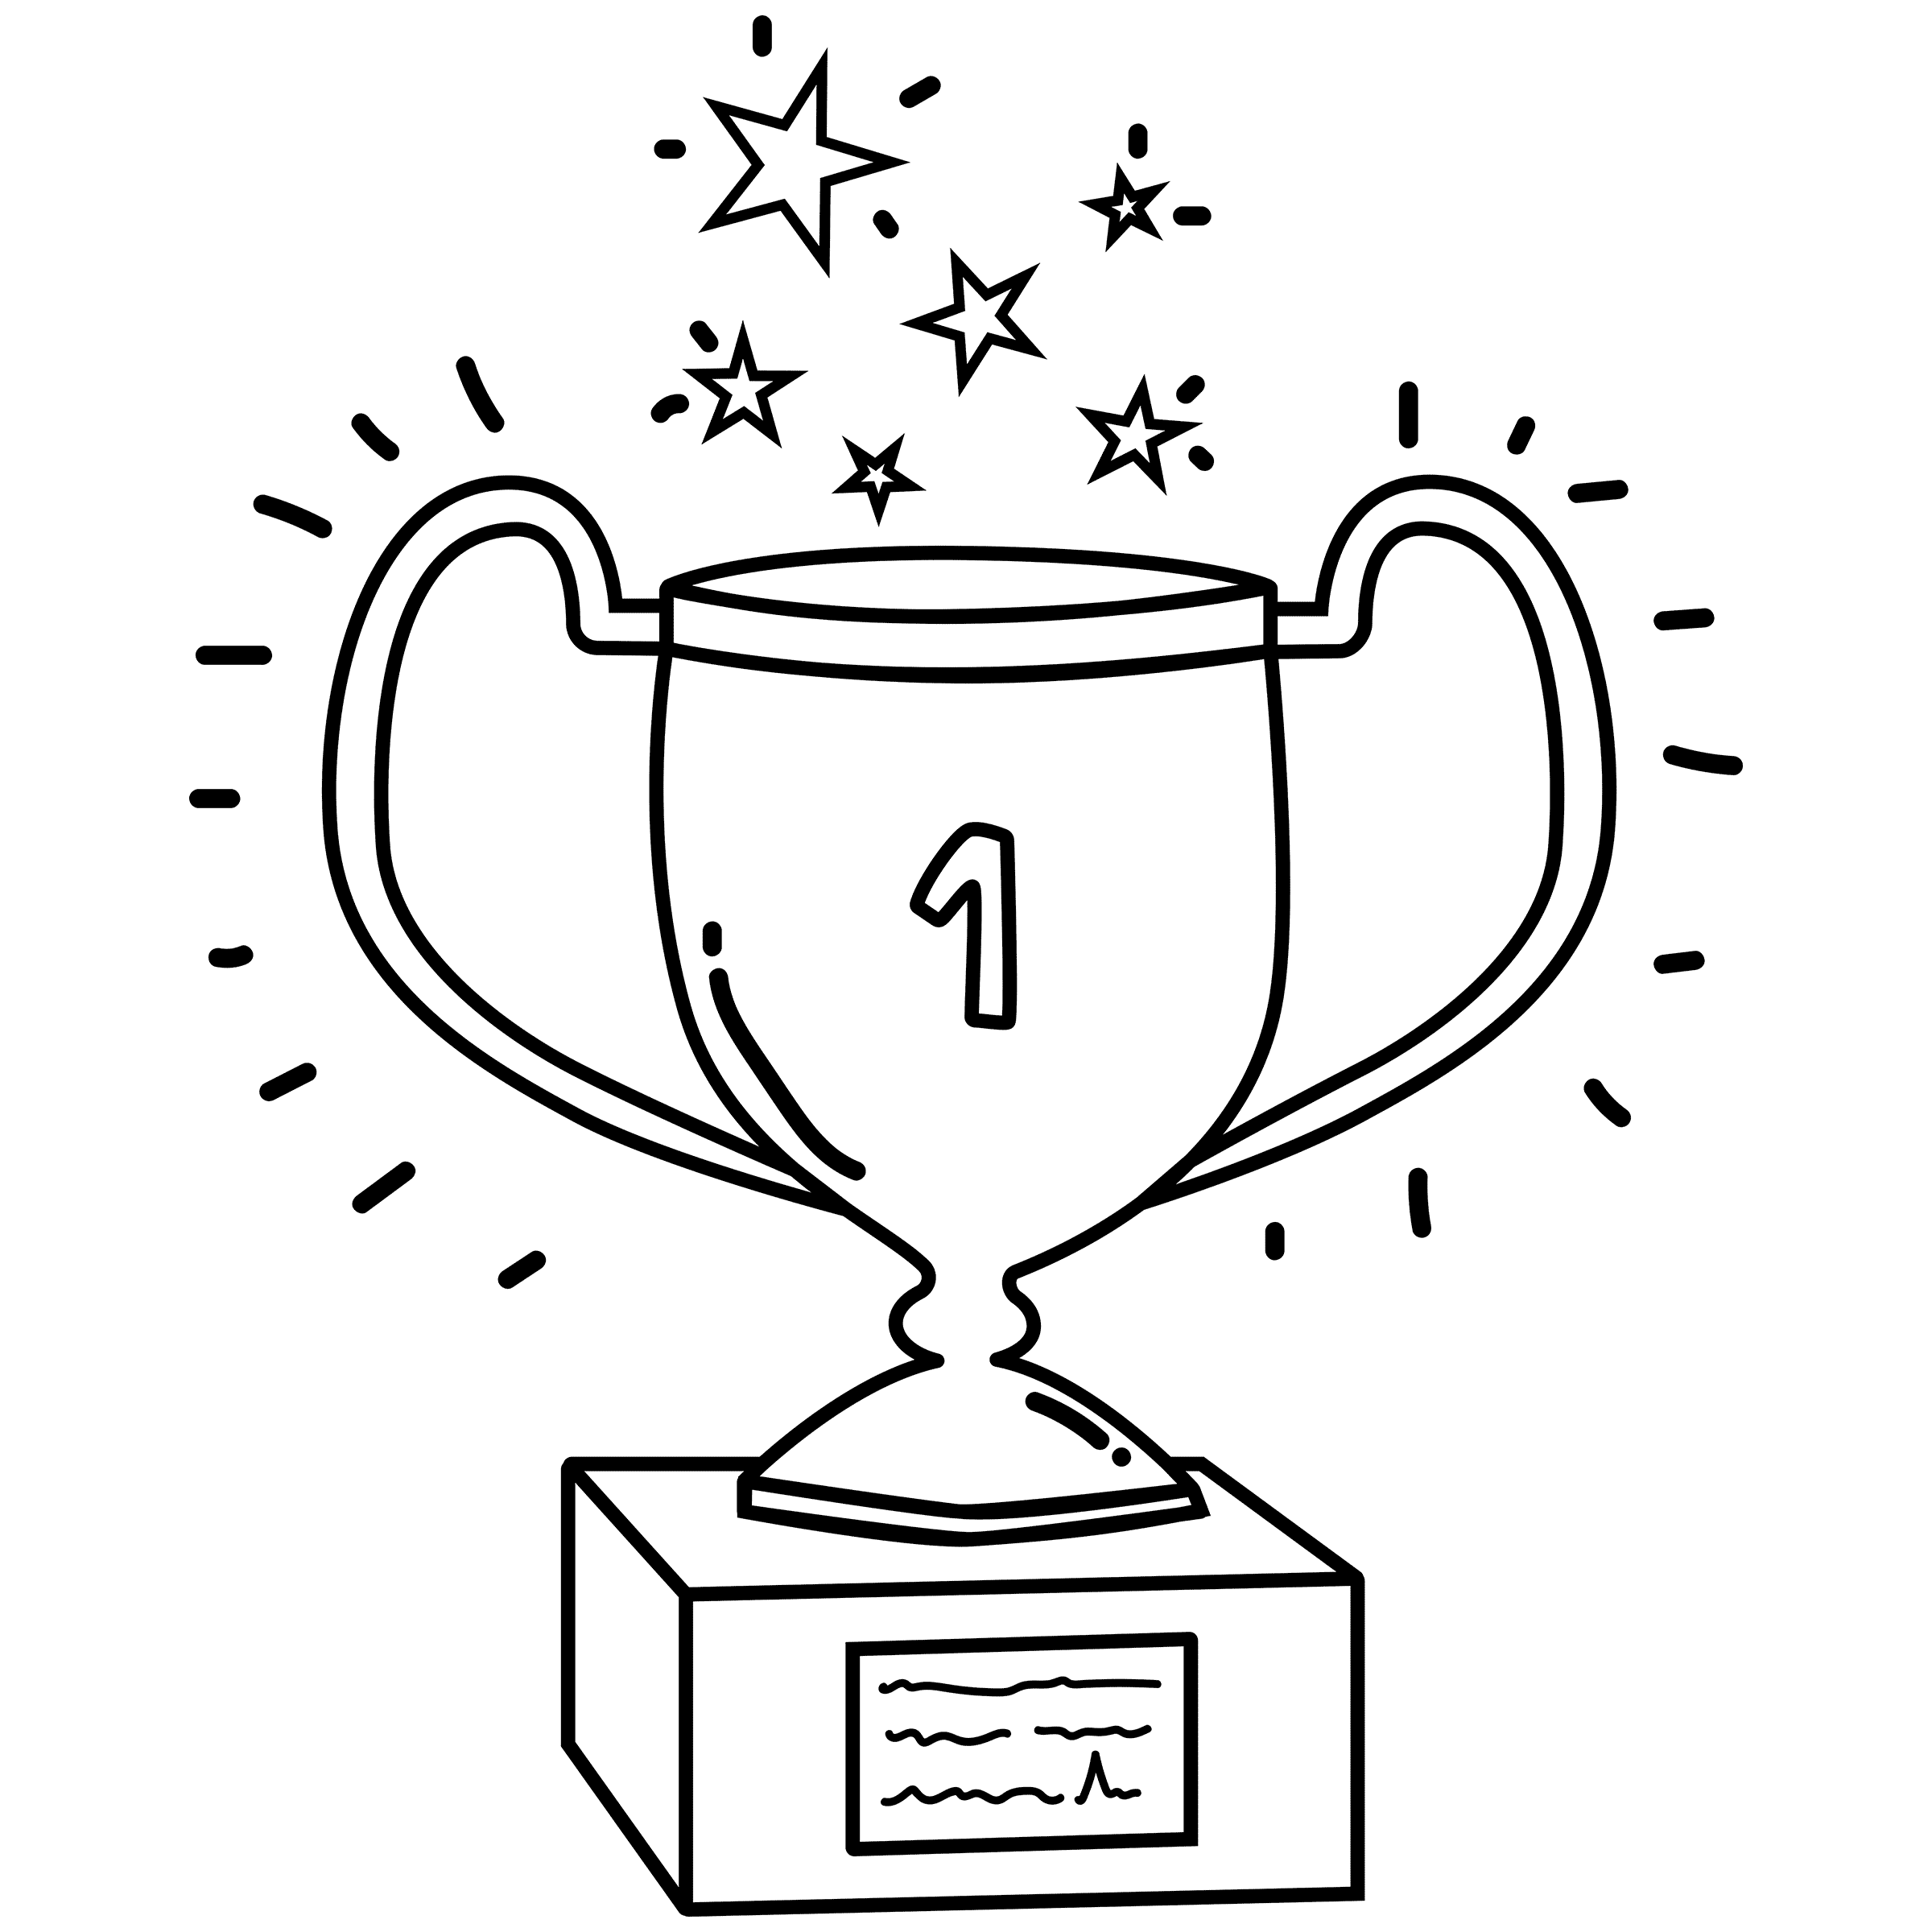 Trophy doodle